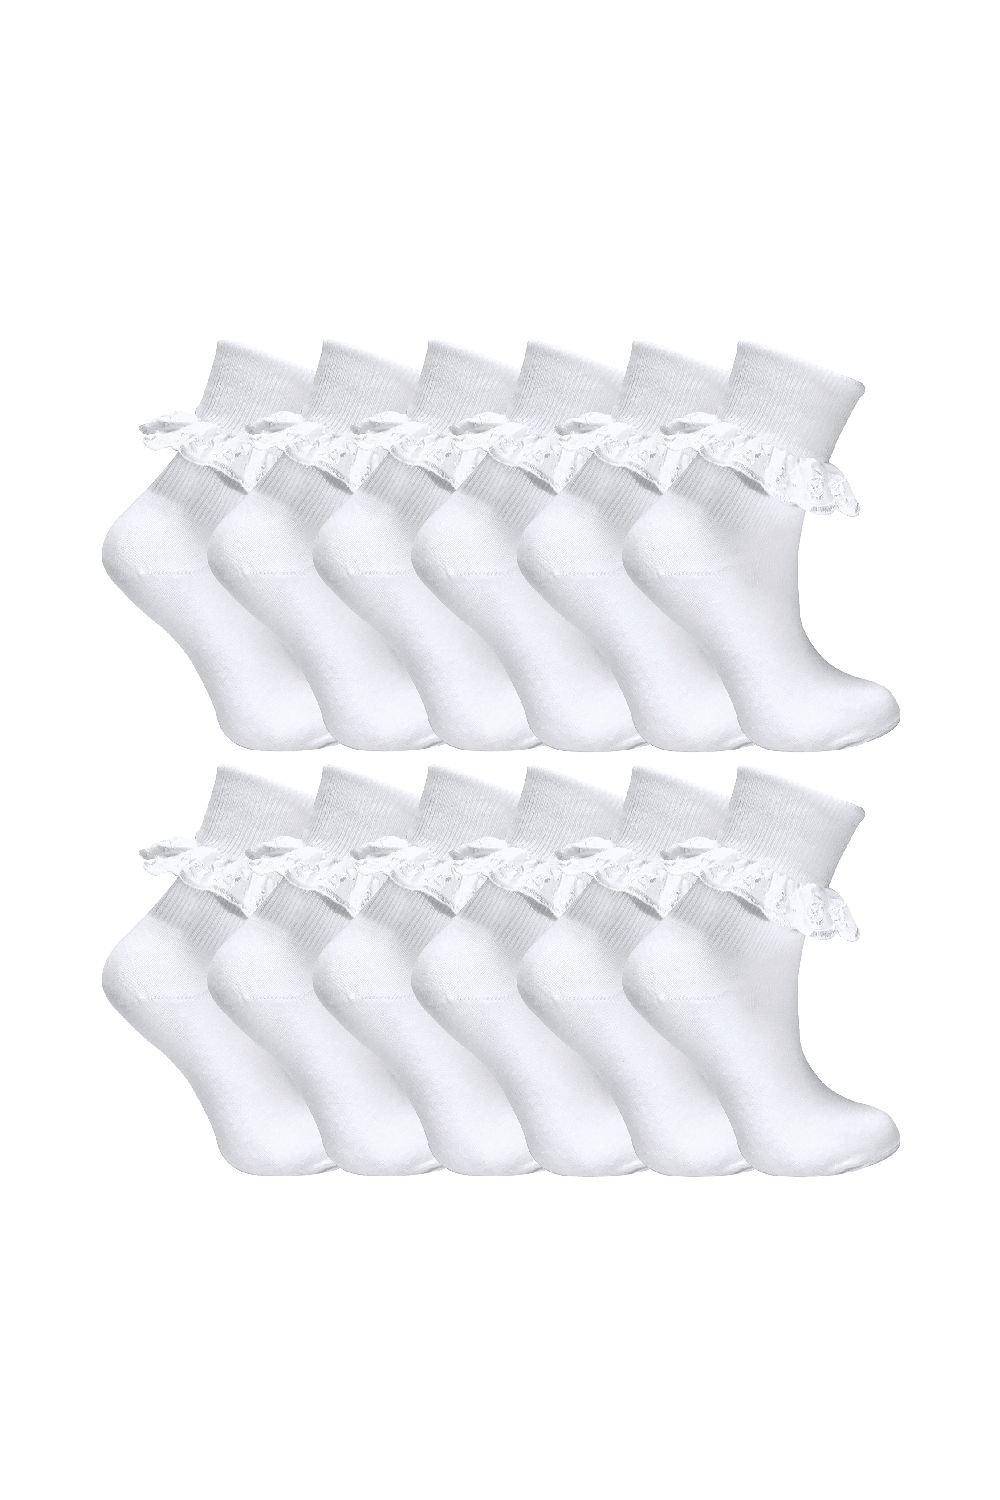 цена 12 пар милых белых школьных носков с кружевом и оборками из богатого хлопка Sock Snob, белый